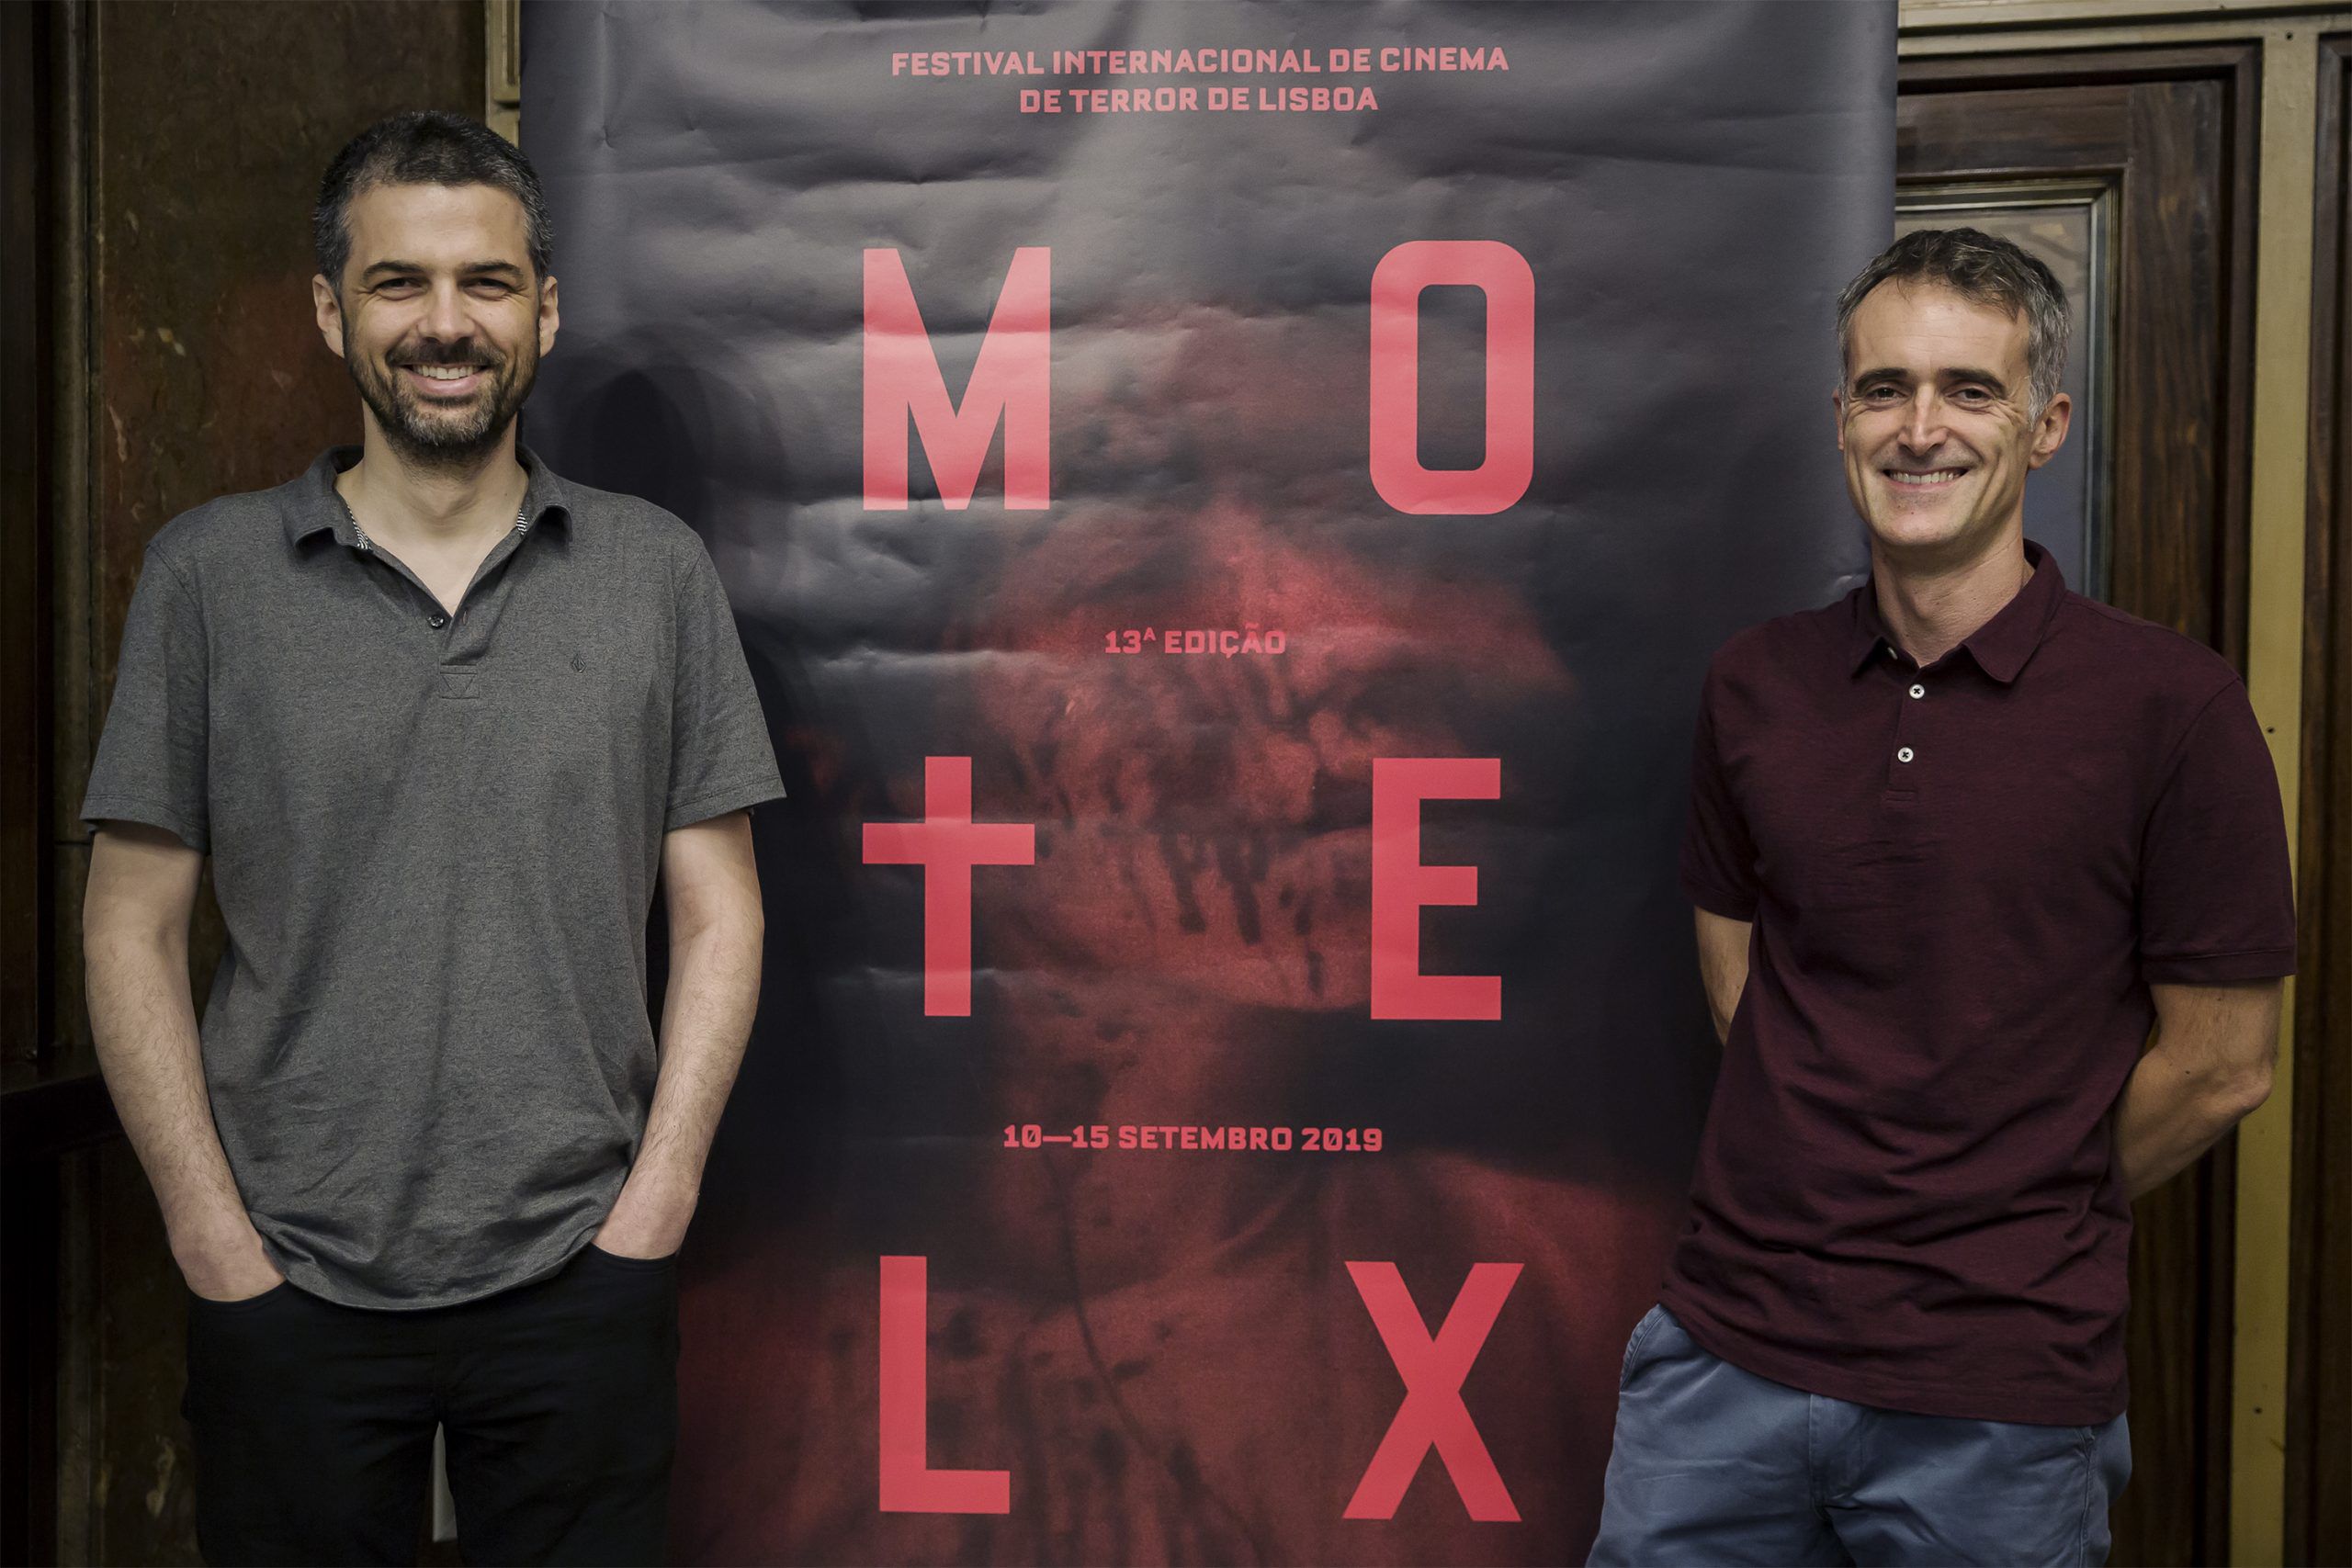 Entrevista aos directores do Motelx: “Os festivais de cinema, mesmo que sejam de nicho, não se podem divorciar das coisas que se passam”